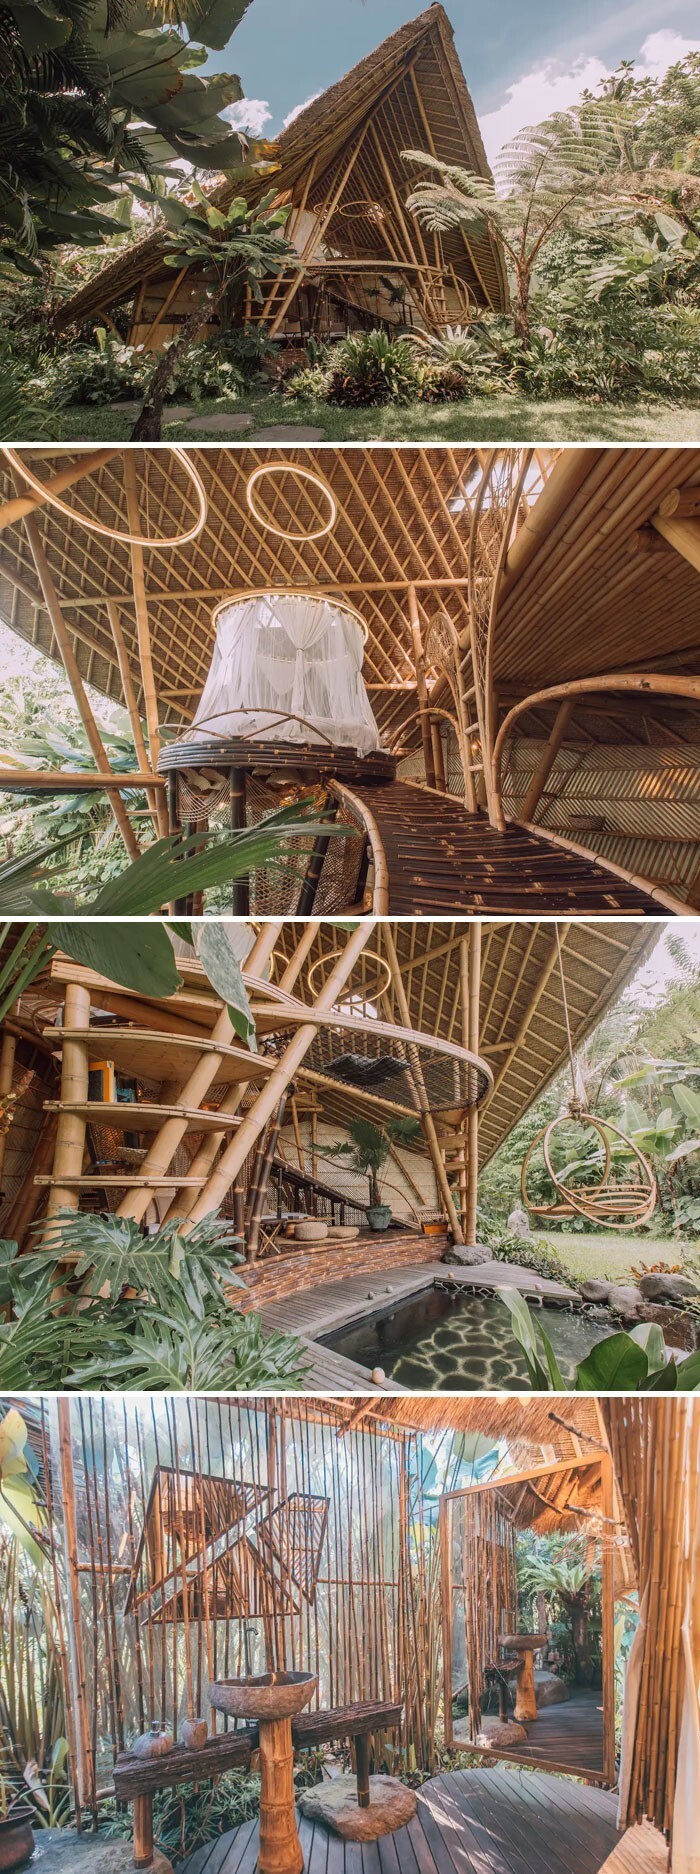 22. Эко-хижина из бамбука. Селат, Бали, Индонезия